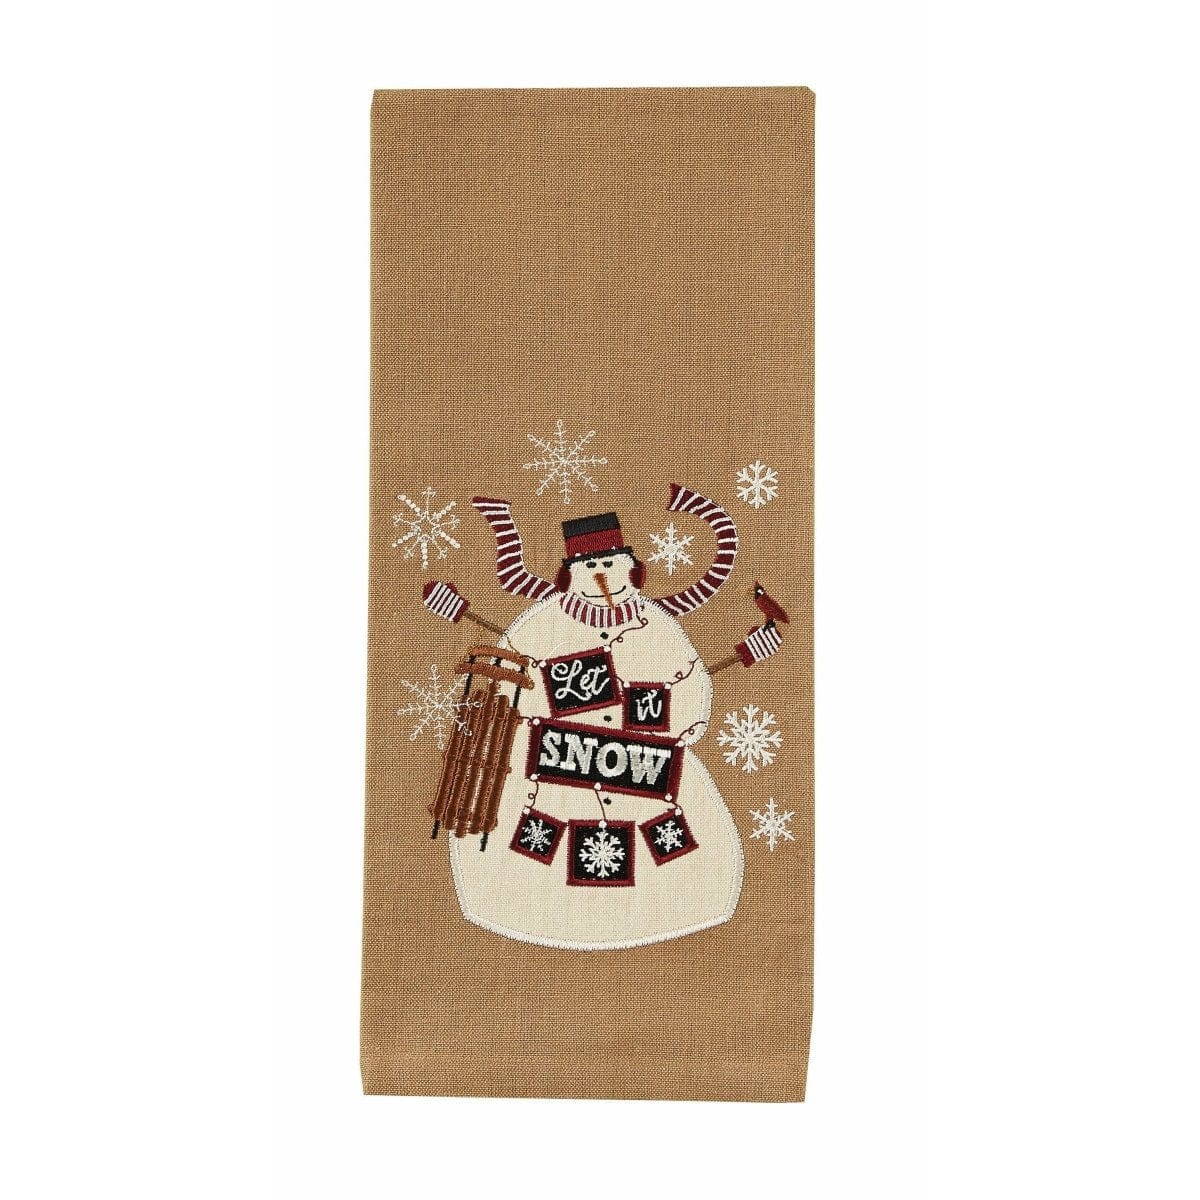 Let It Snow Decorative Towel-Park Designs-The Village Merchant